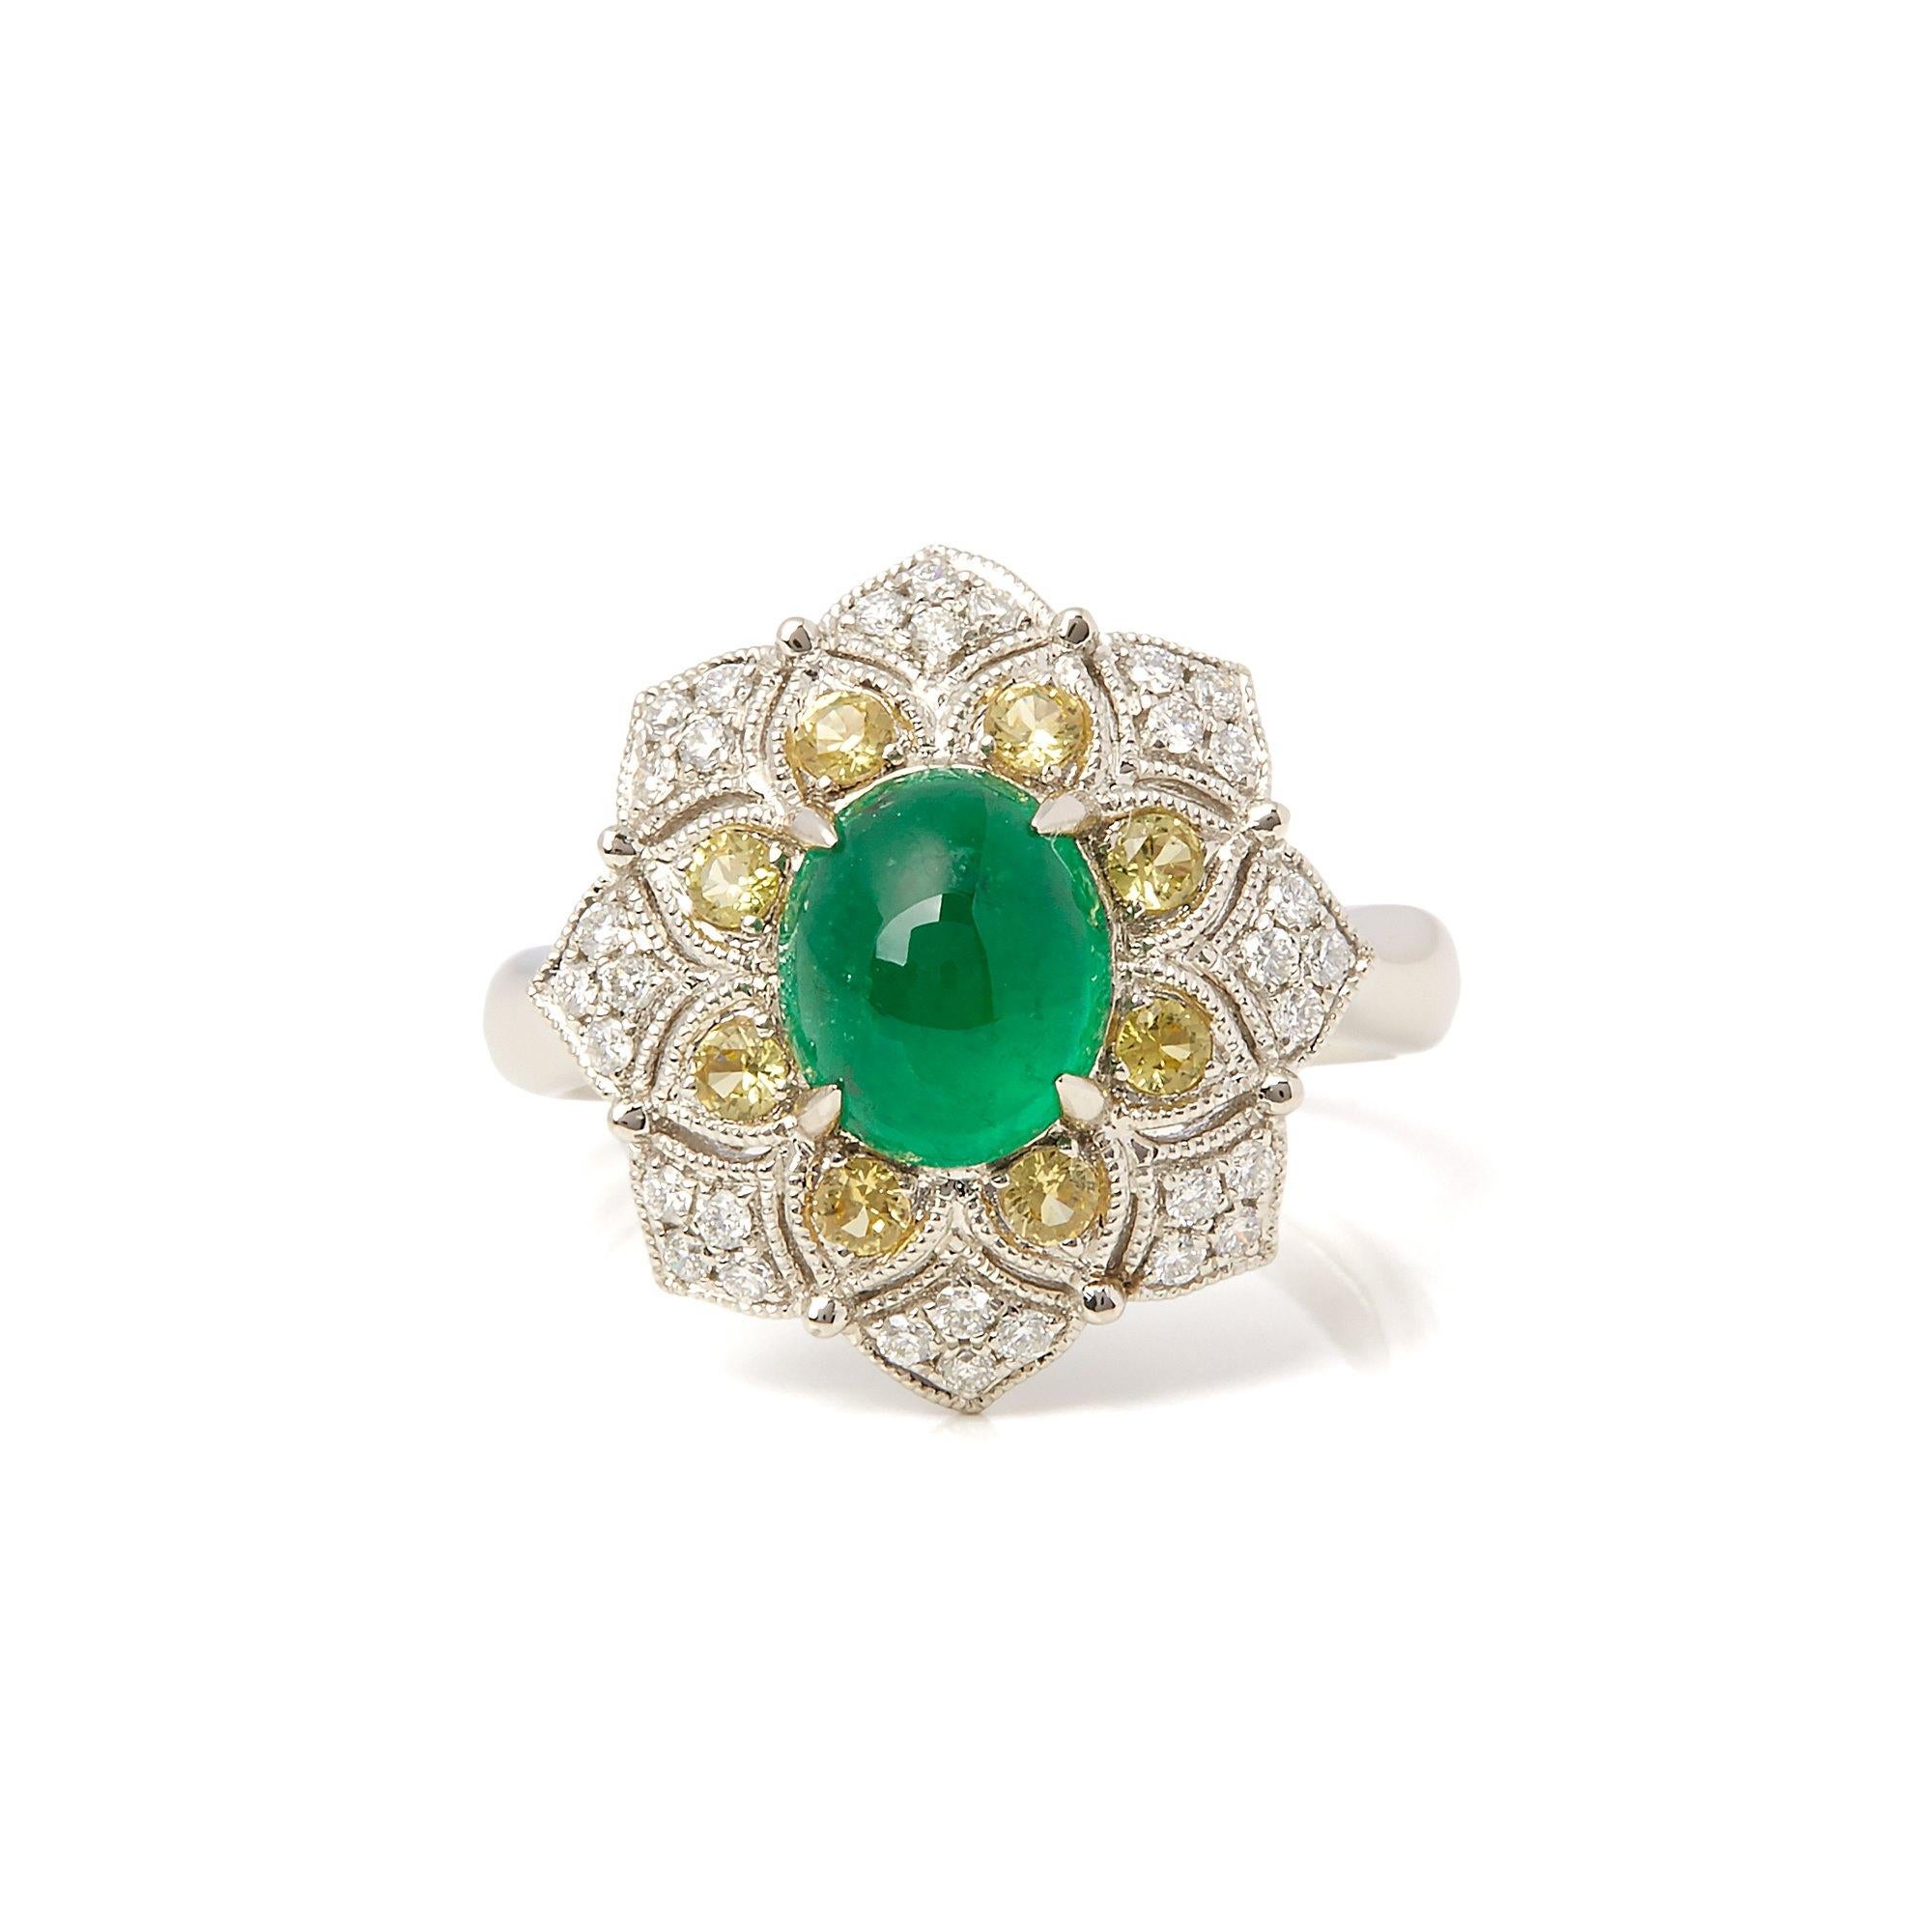 Dieser von David Jerome entworfene Ring stammt aus seiner Privatsammlung und enthält einen Smaragd im Cabochon-Schliff, der in der Chivor-Mine in Kolumbien gewonnen wurde. Insgesamt 2,16cts, besetzt mit runden Diamanten im Brillantschliff und gelben